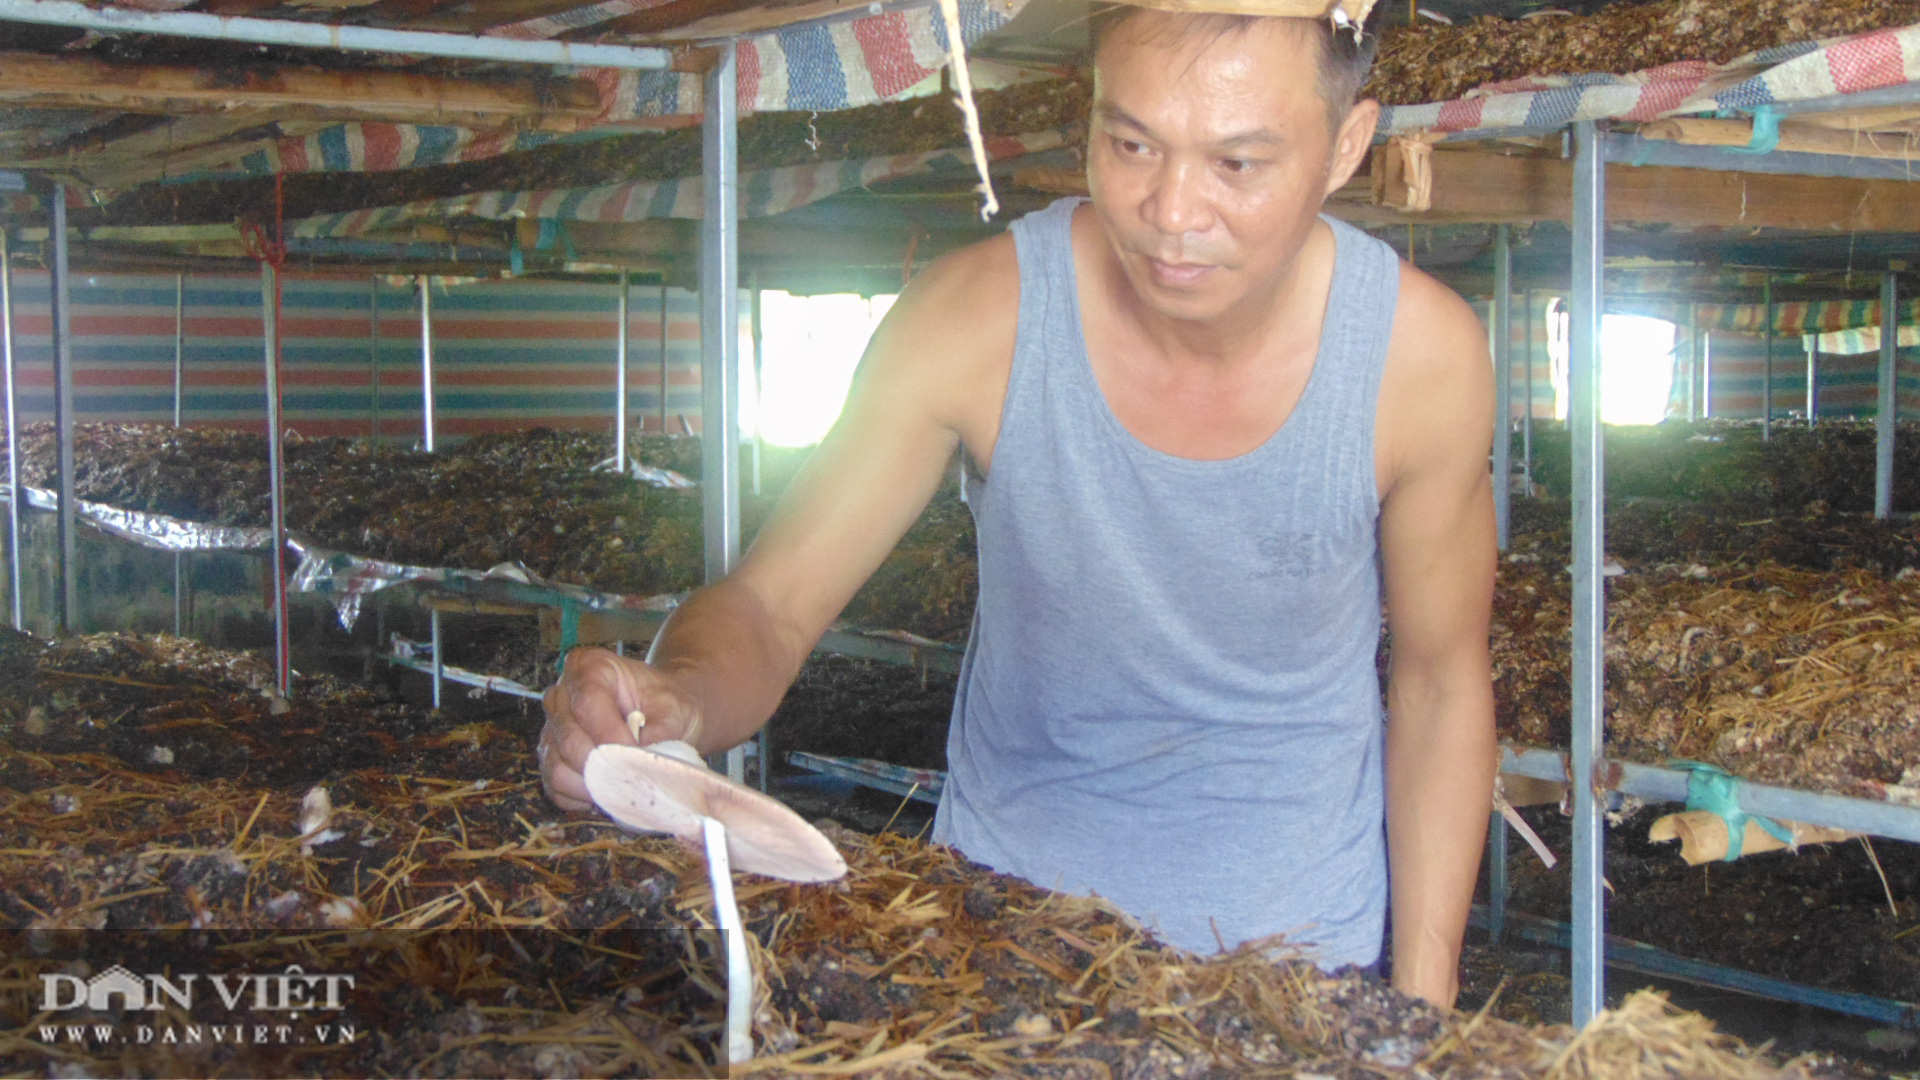 Trồng nấm rơm thương phẩm, anh nông dân Thái Nguyên bỏ túi vài trăm triệu mỗi năm - Ảnh 1.